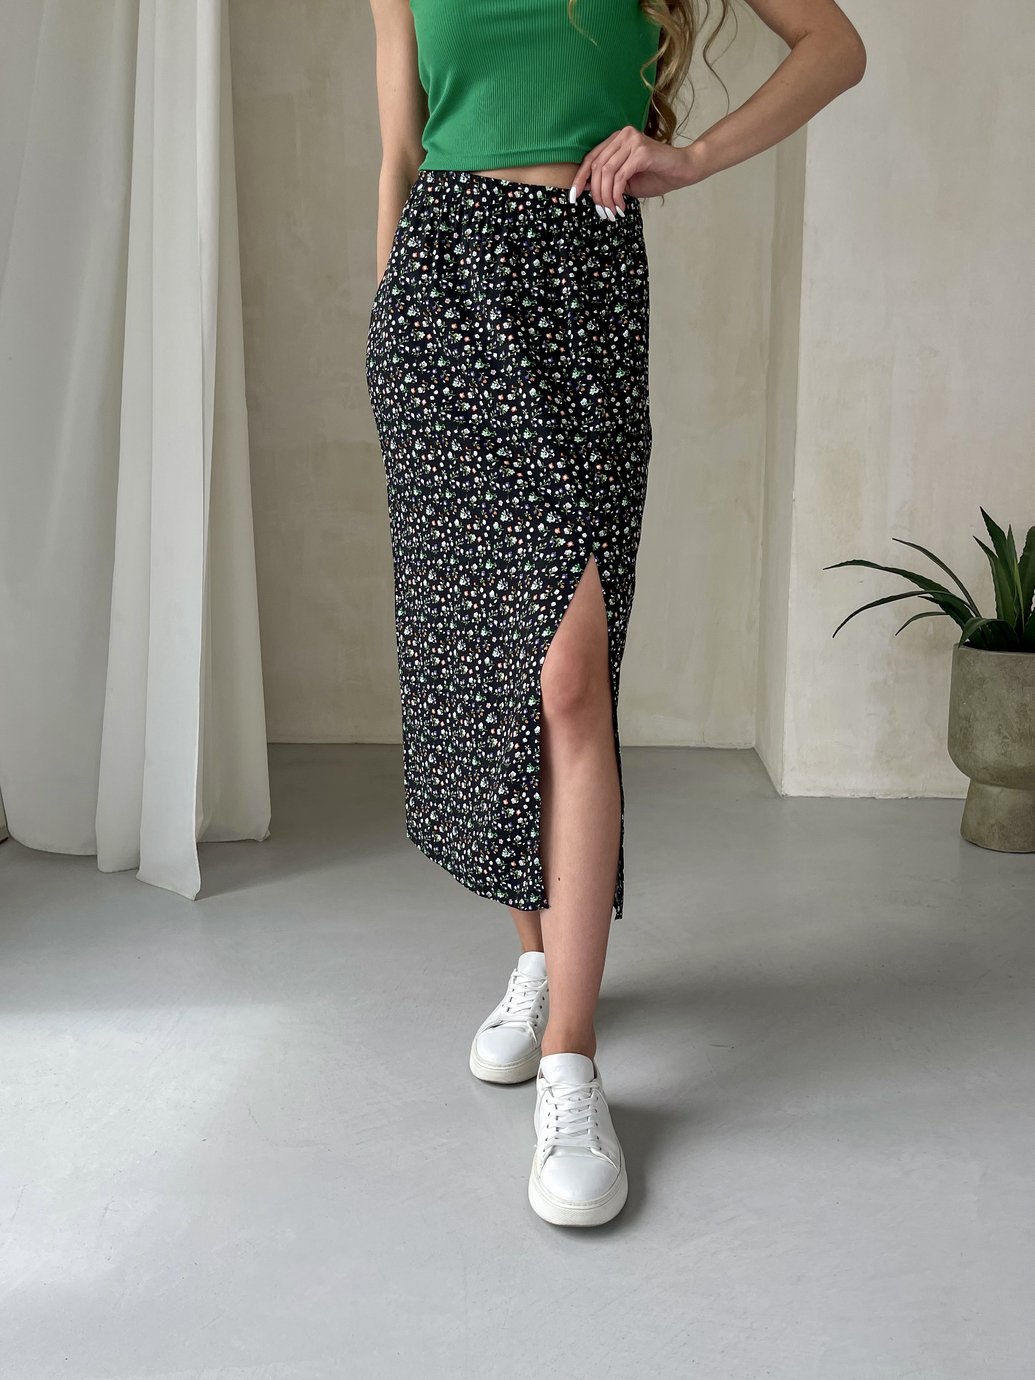 Купить Длинная женская юбка ниже колена с размером в цветочек Merlini Равенна 400000123, размер 42-44 (S-M) в интернет-магазине